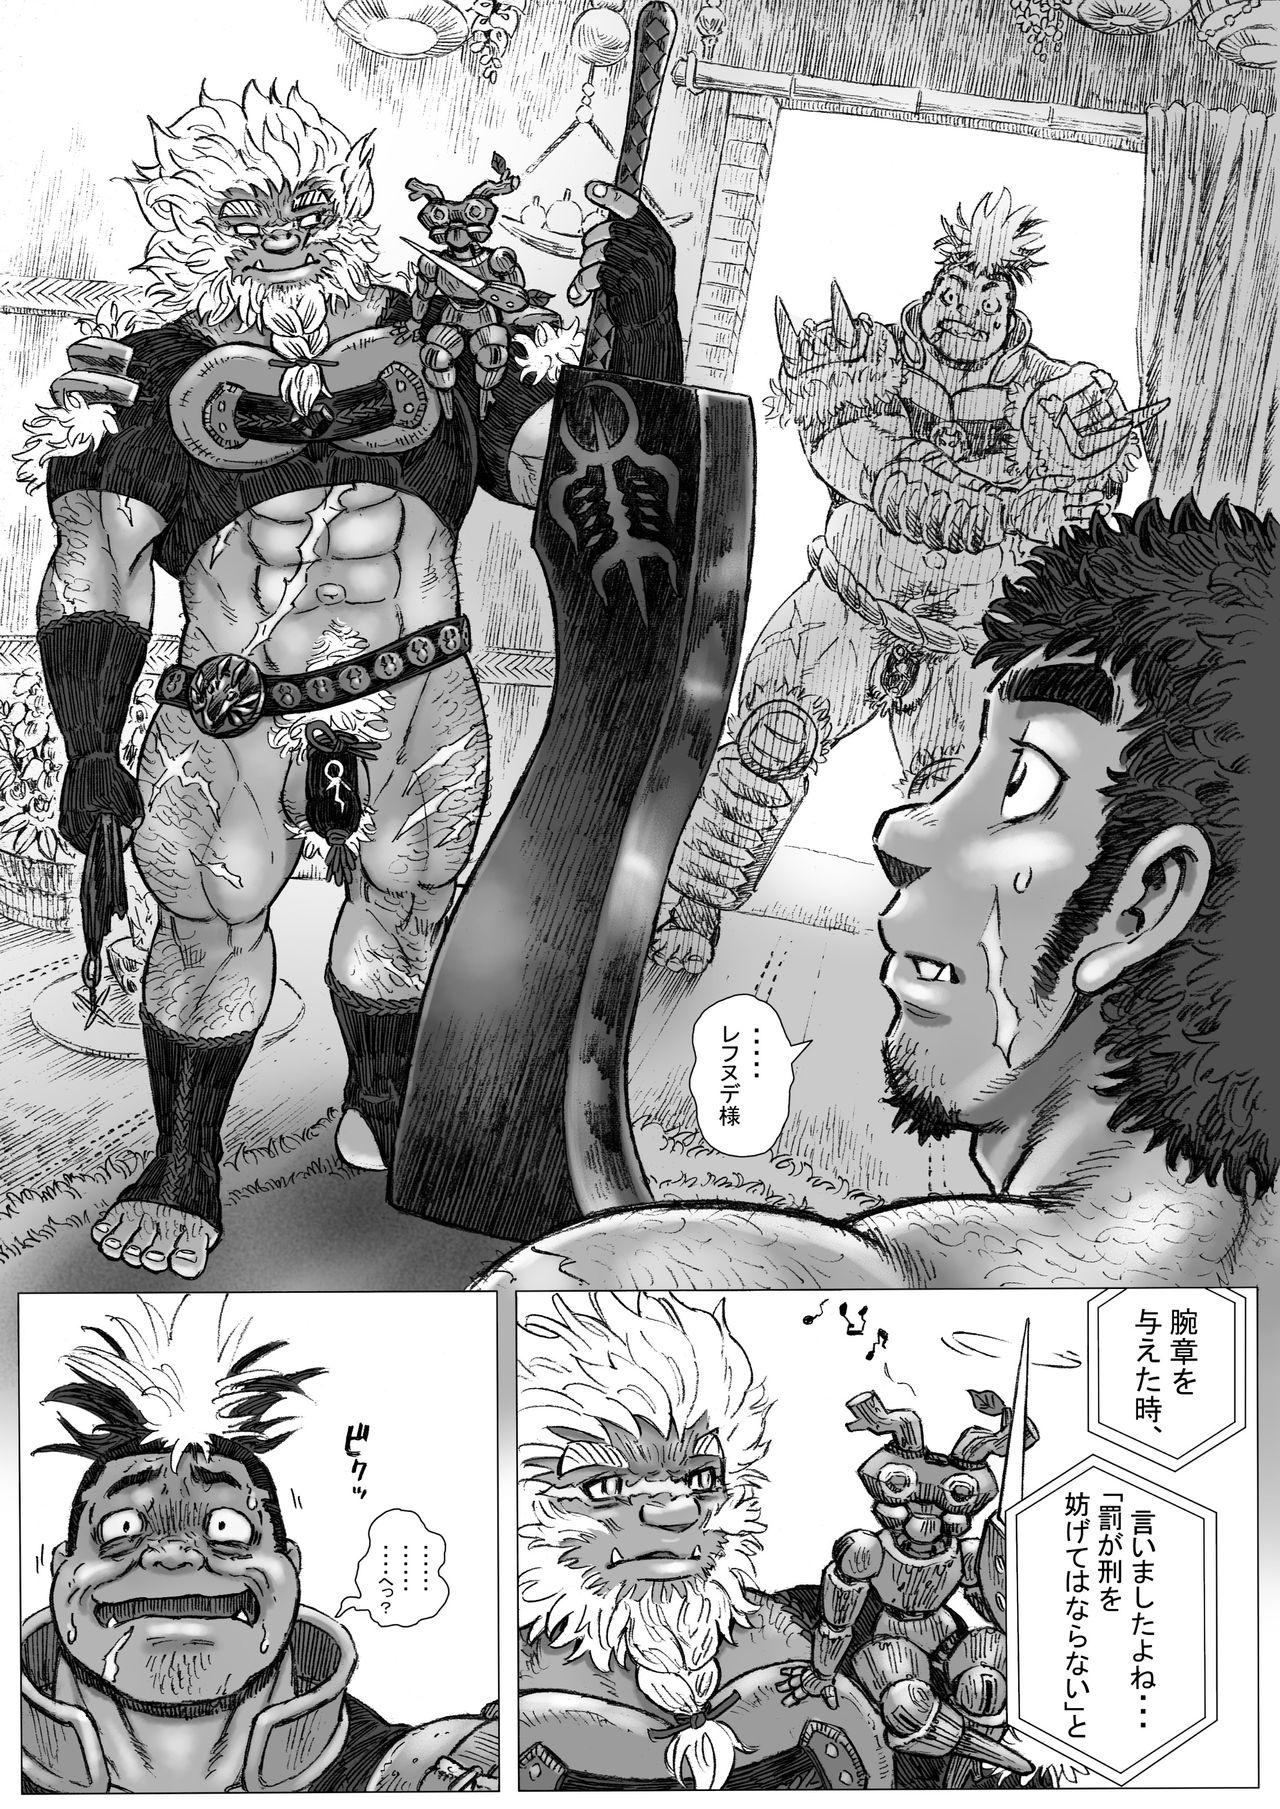 Ball Licking Hepoe no Kuni kara 16 - konna mitu to mo nee katu ko no maki Cocks - Page 6